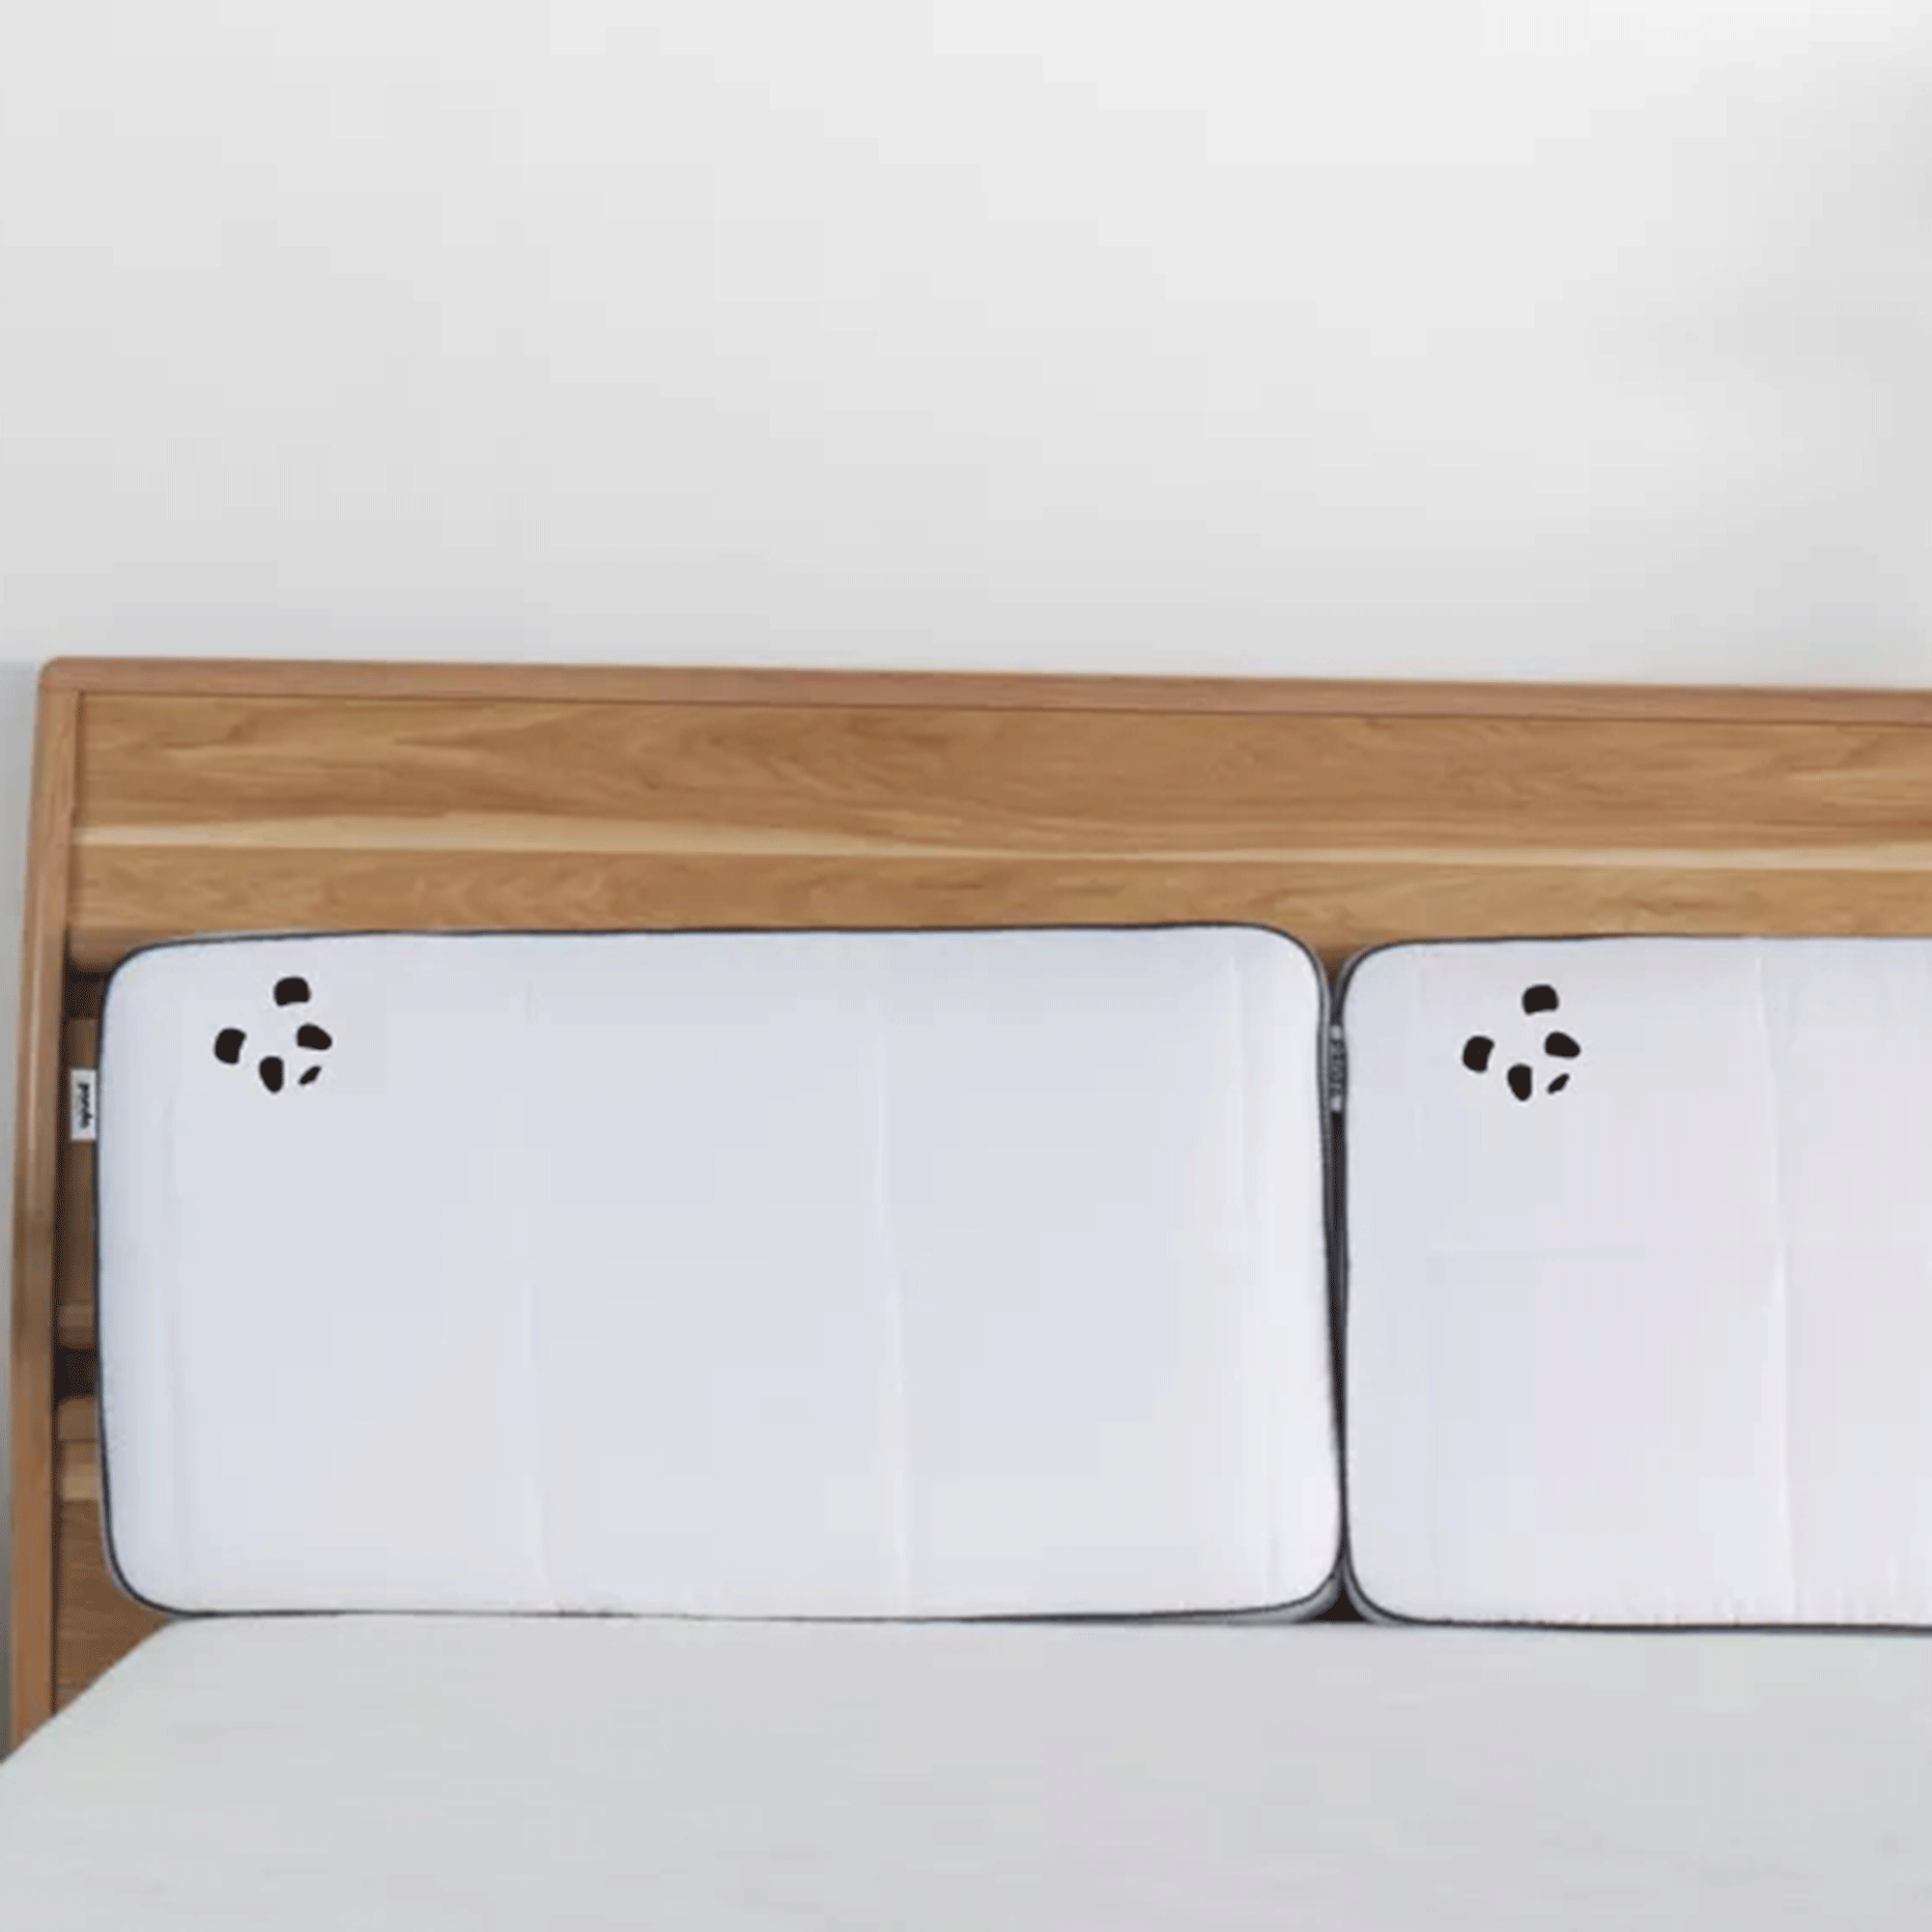 Panda bedding with Panda pillows